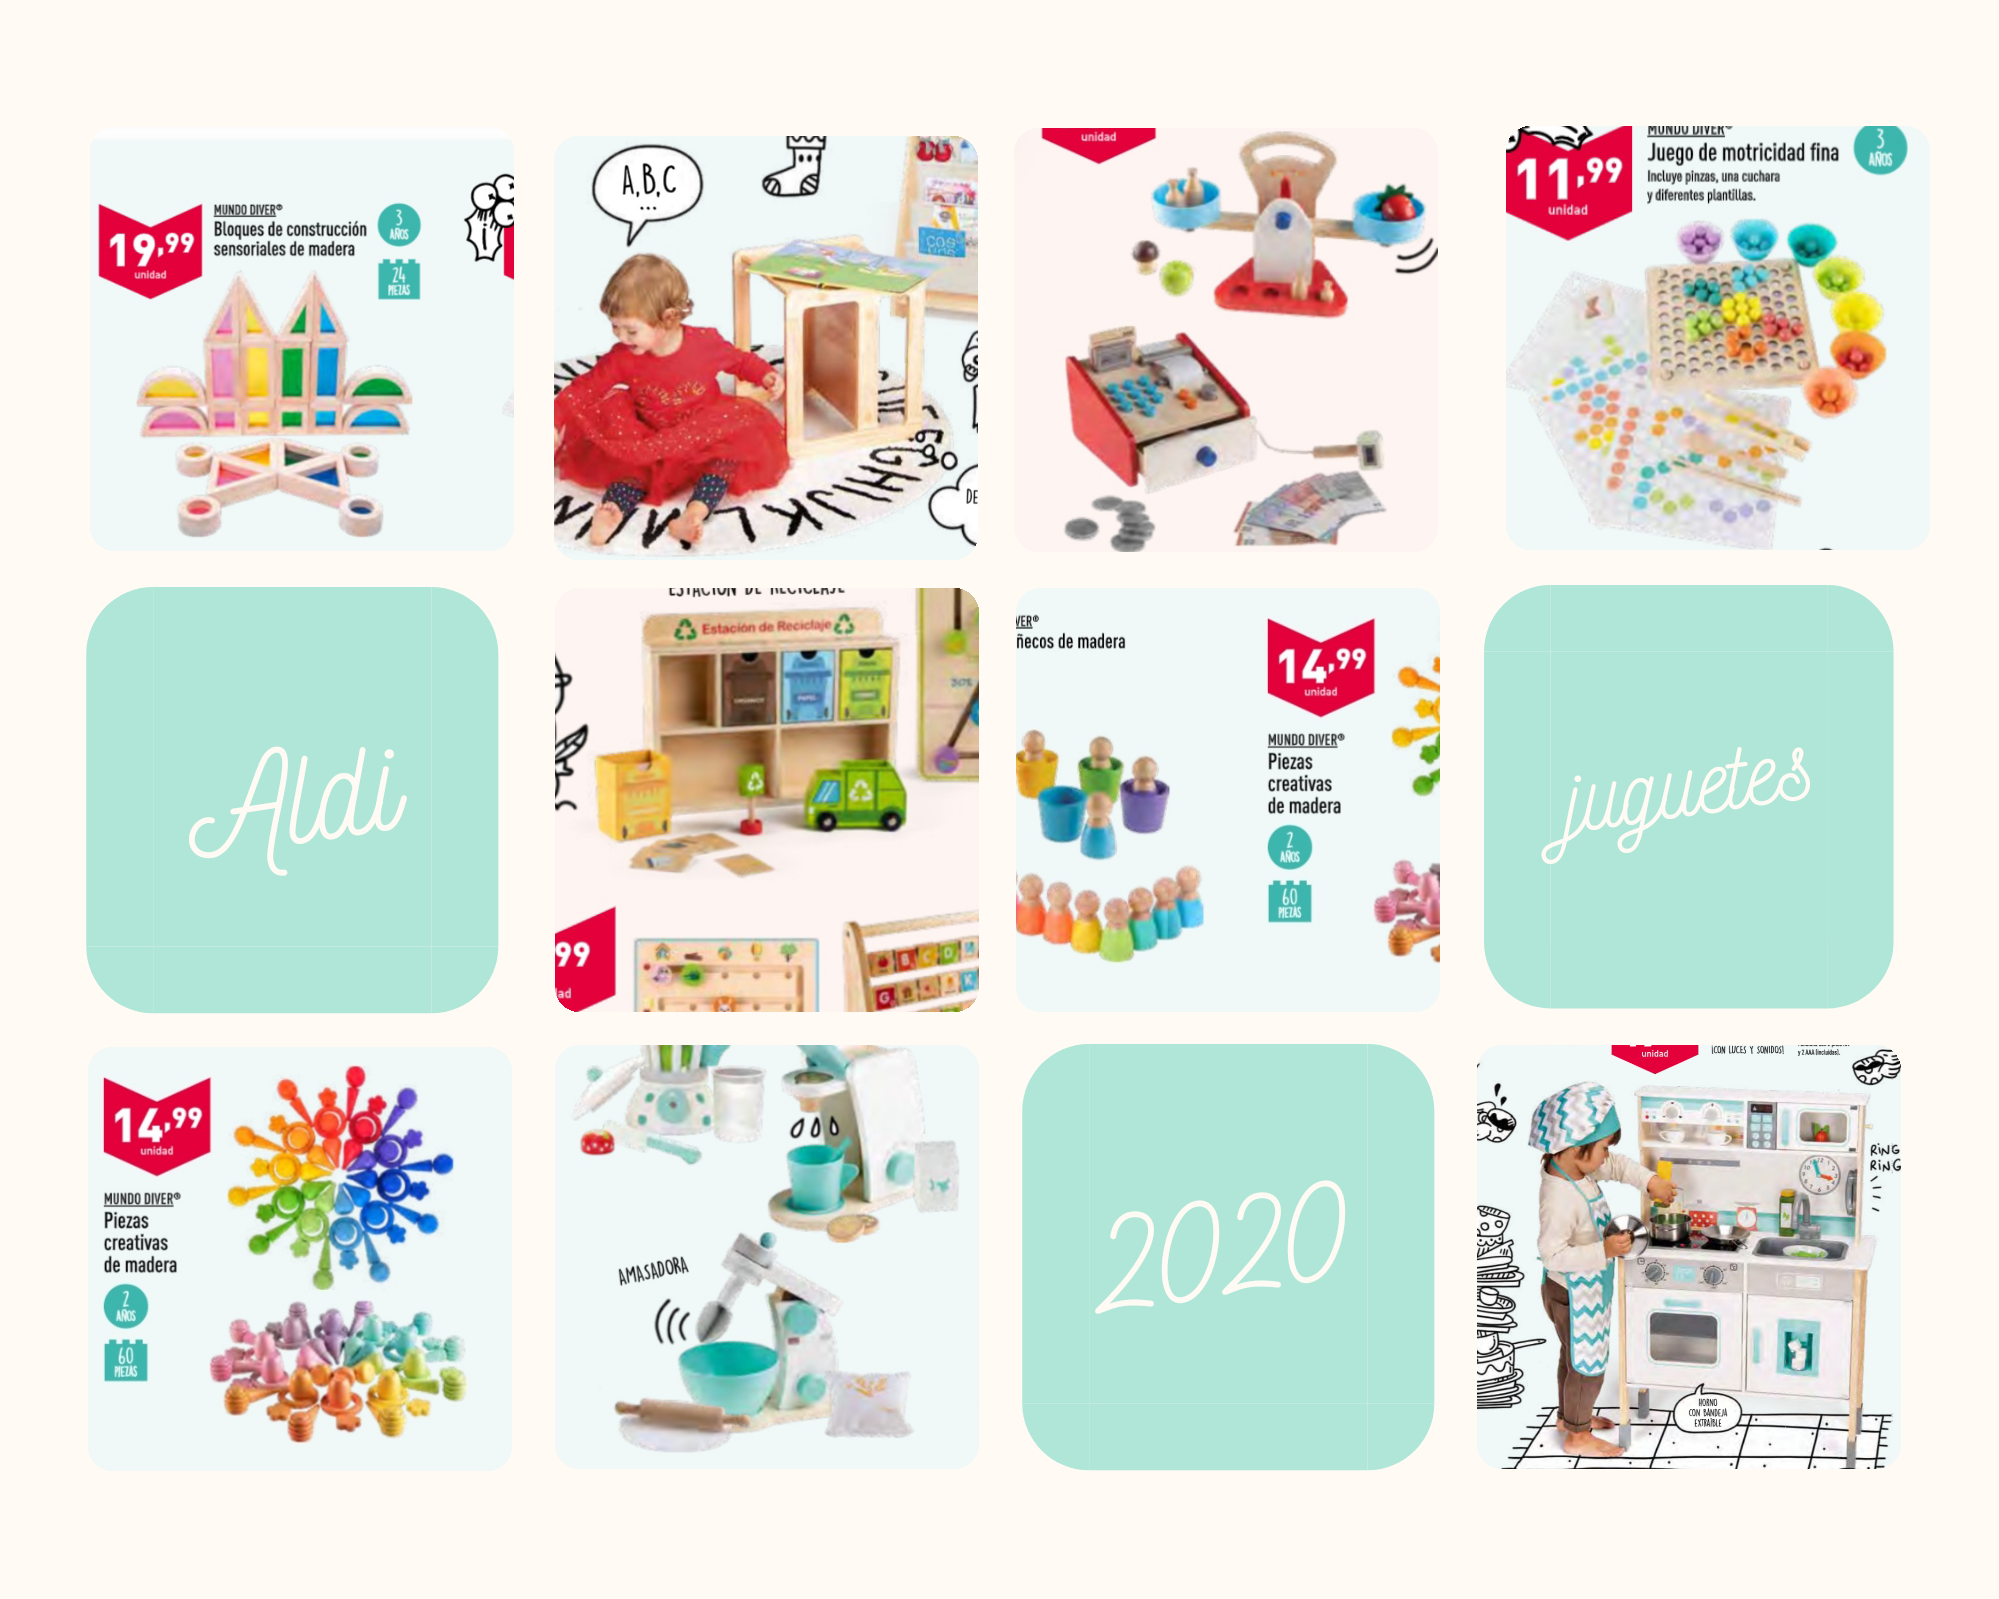 Aldi juguetes 2020 a 2022. Juguetes Montessori y de madera para todos los públicos